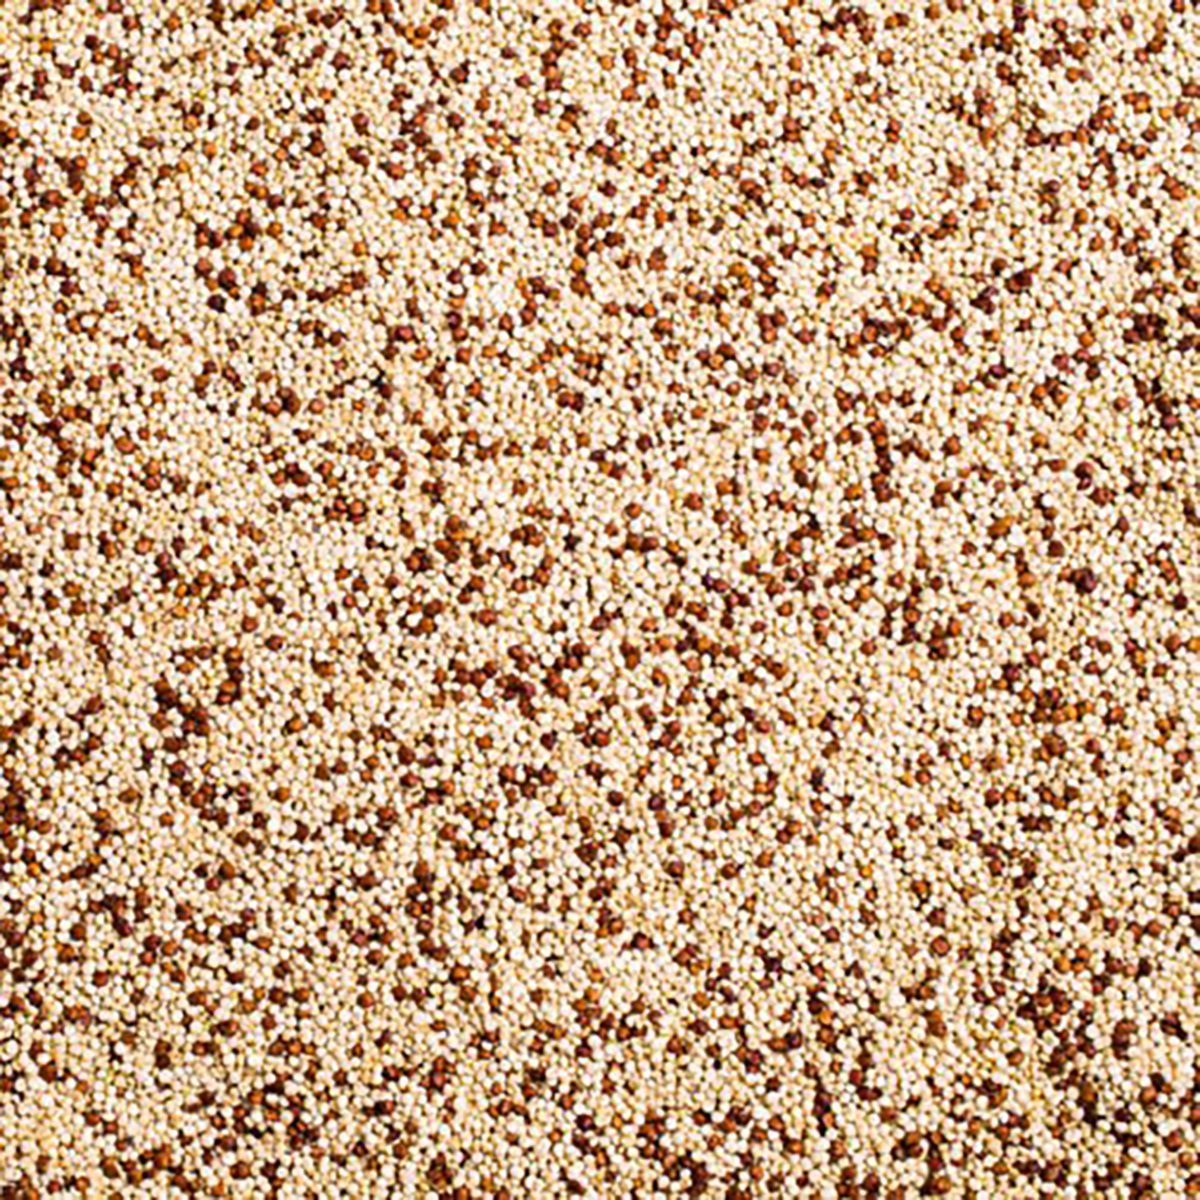 mixed color quinoa